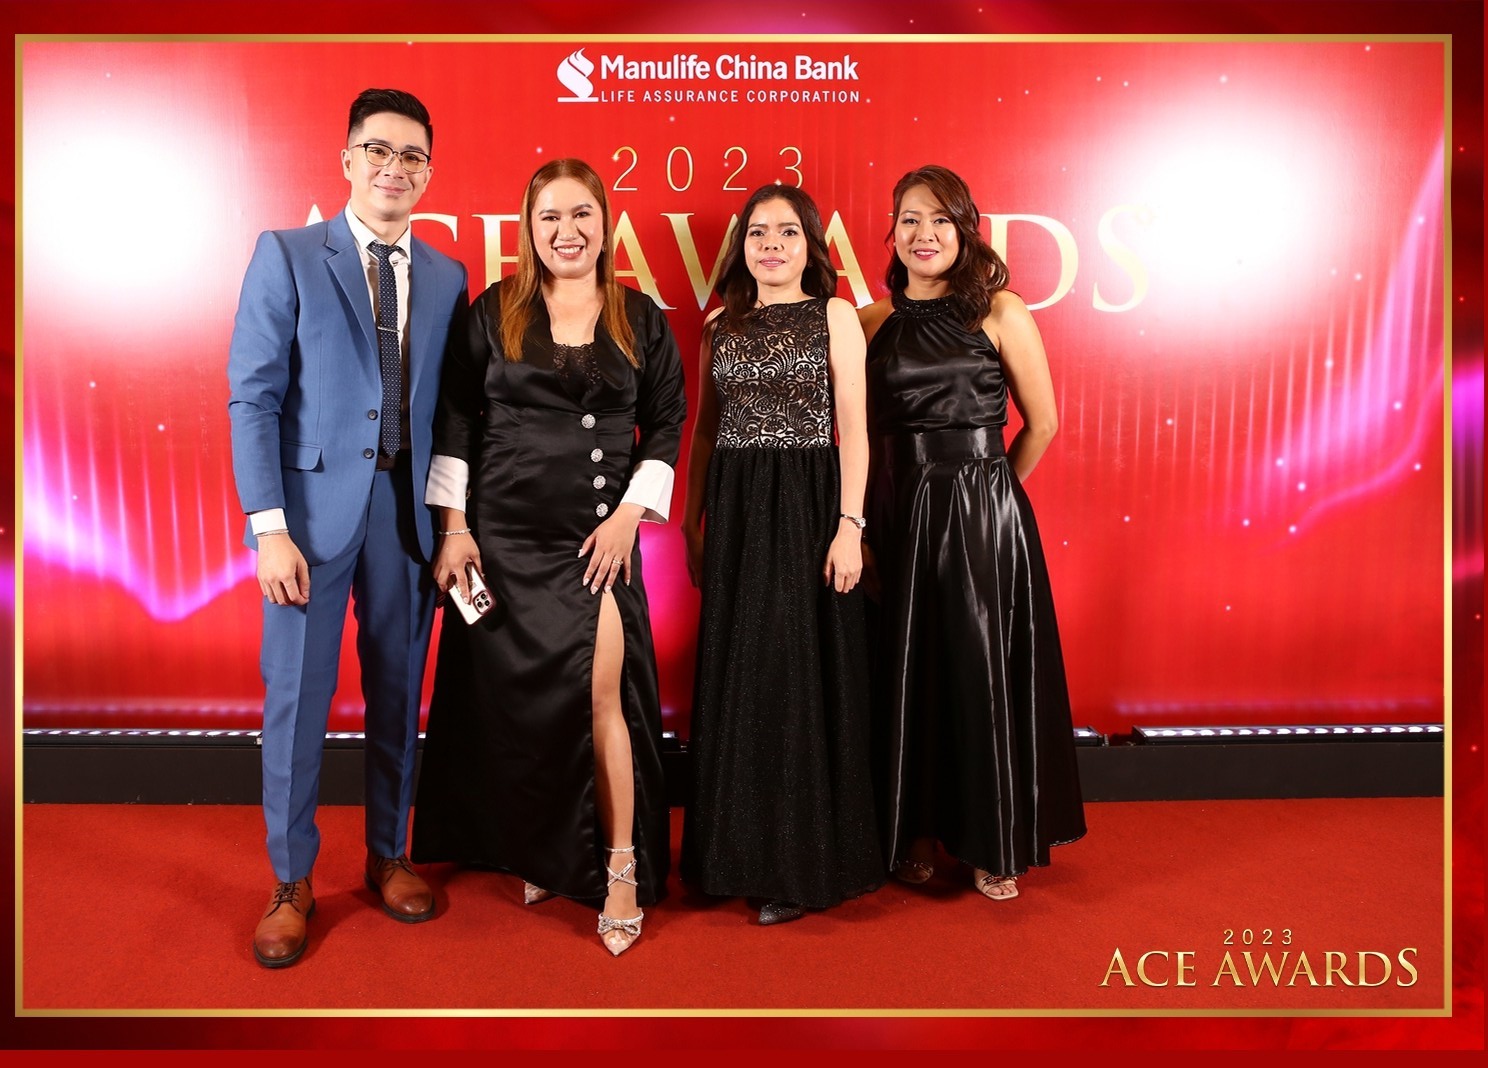 MCBL 2023 Ace Awards Batch 2 – Photoman